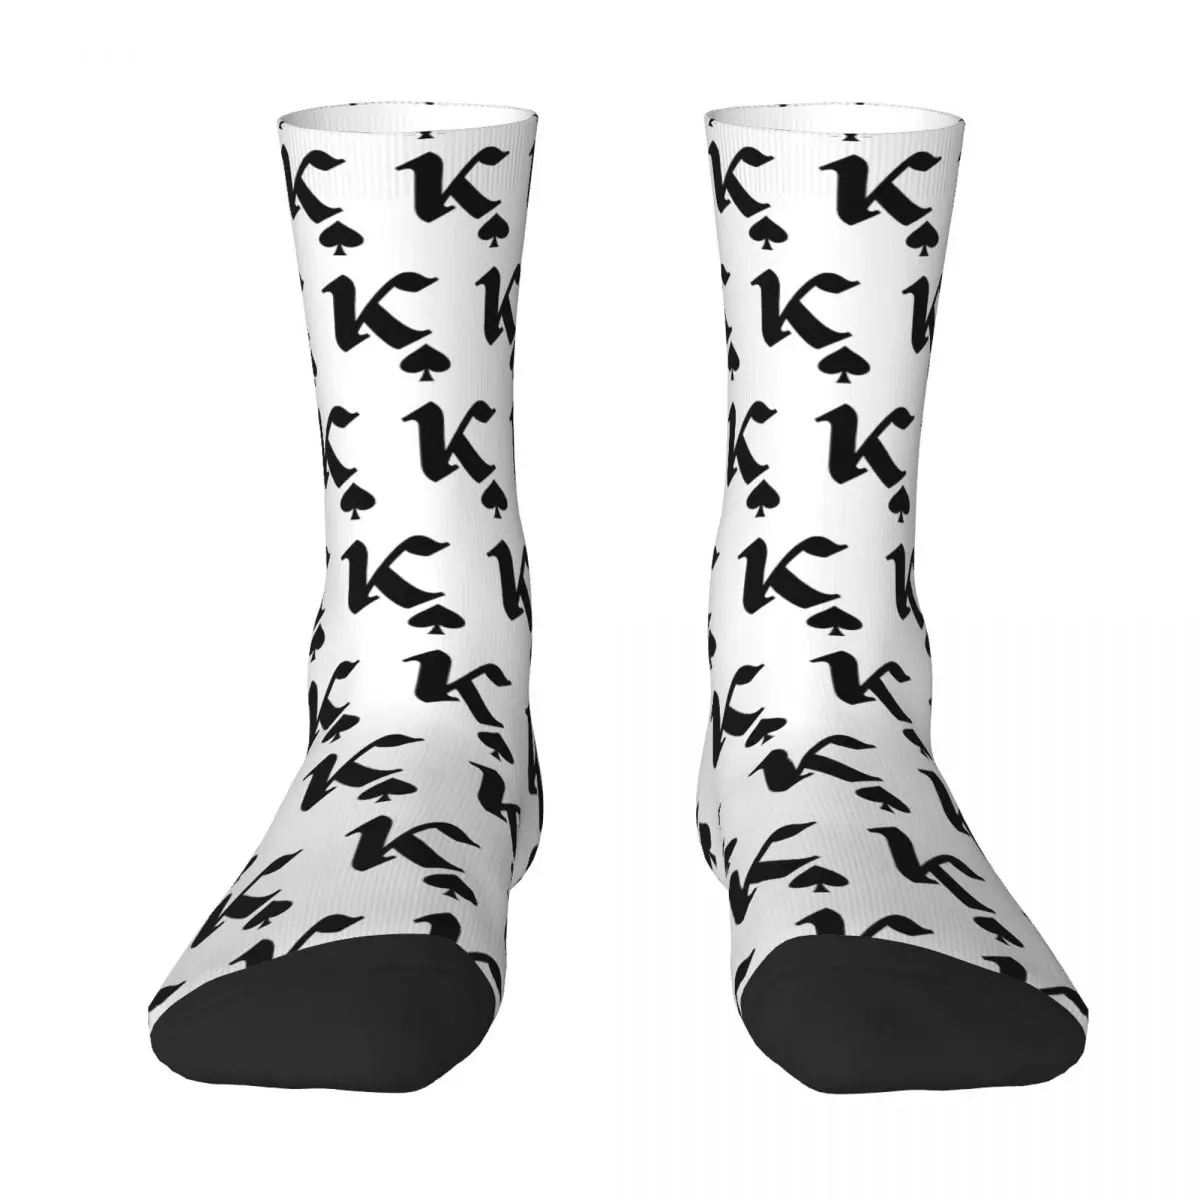 K Spade Adult Socks,Unisex socks,men Socks women Socks